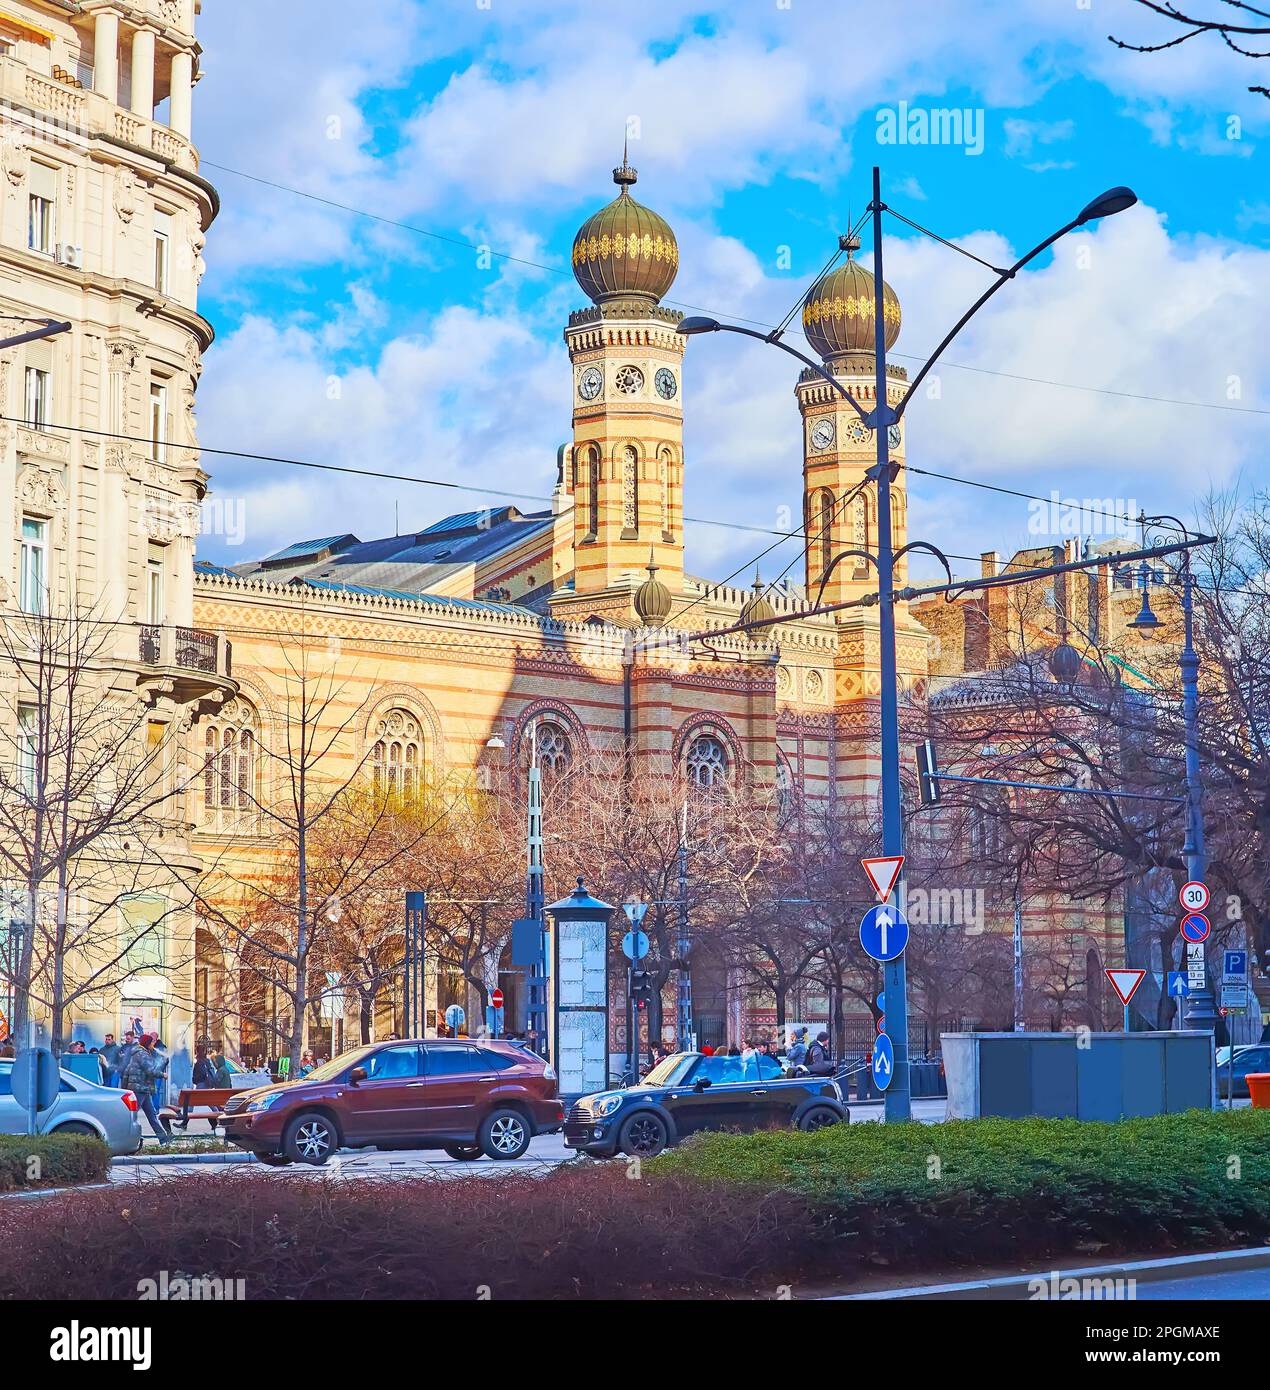 La scena stradale con ingorghi di traffico e la storica Sinagoga di Dohany Street con torri orribili e cupole bulbose, Belvaros, Budapest, Ungheria Foto Stock